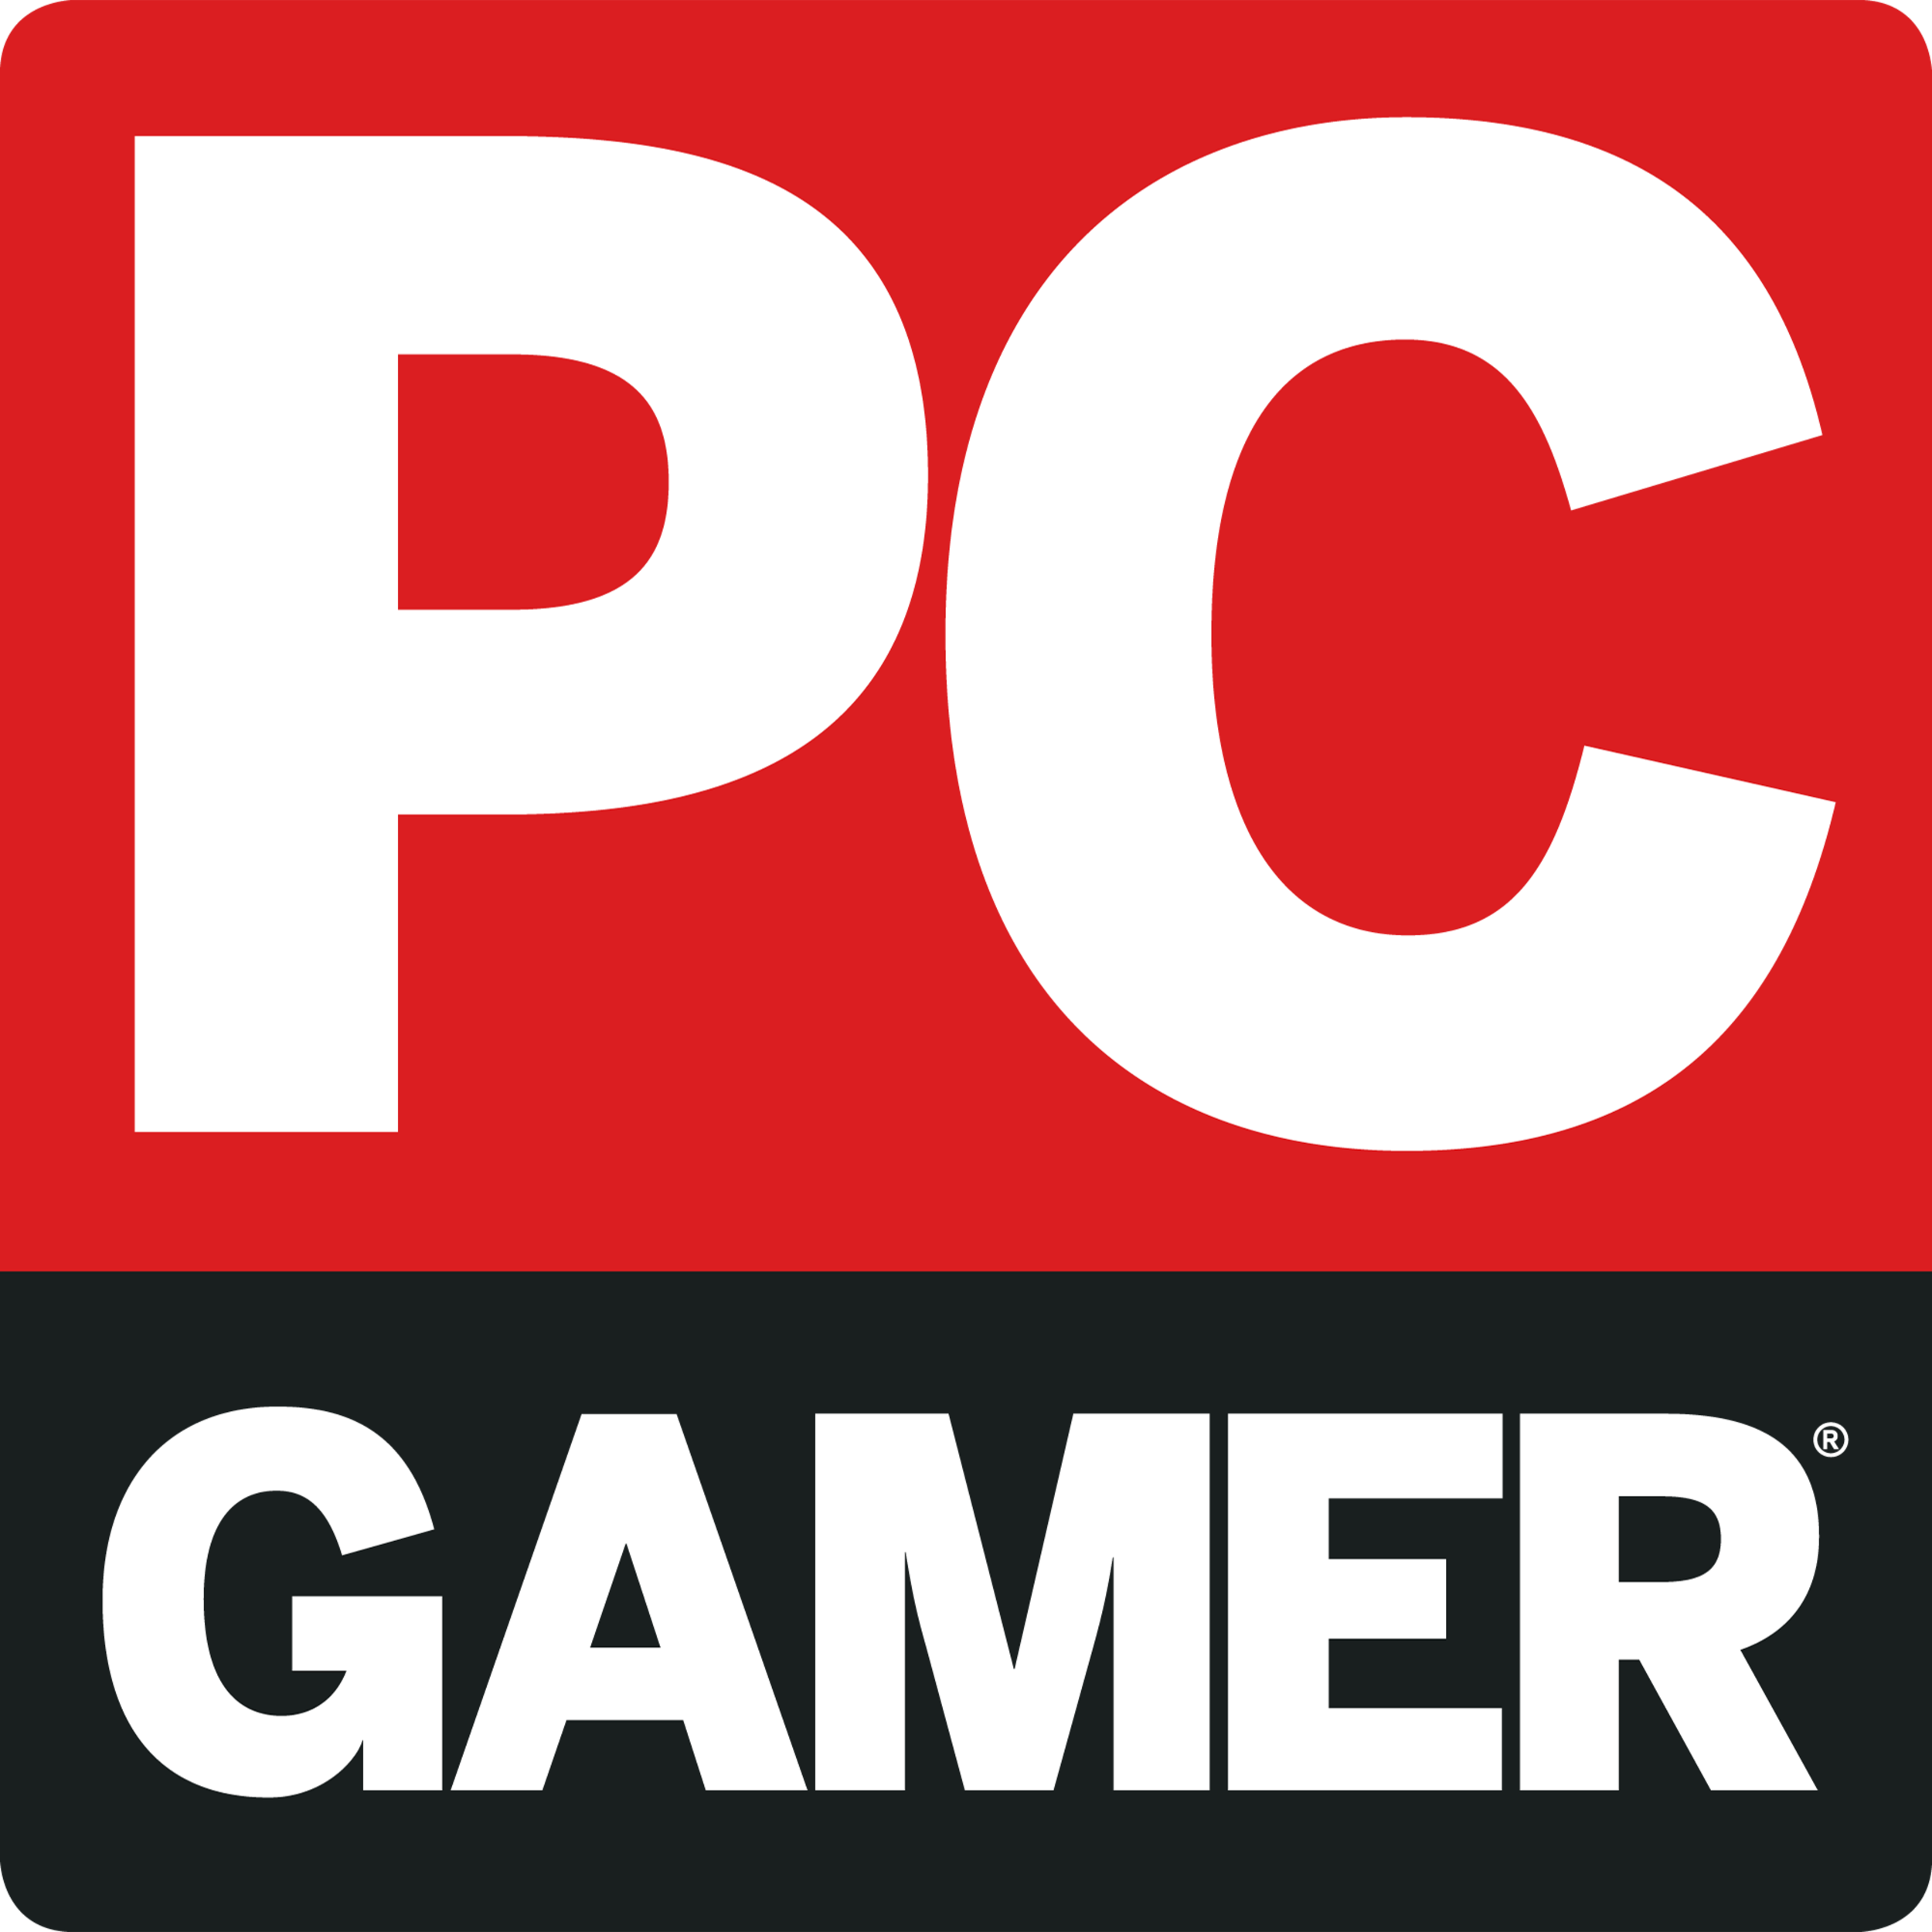 PG Gaming logo design - pixellab tutorial [Vandy Design] - YouTube